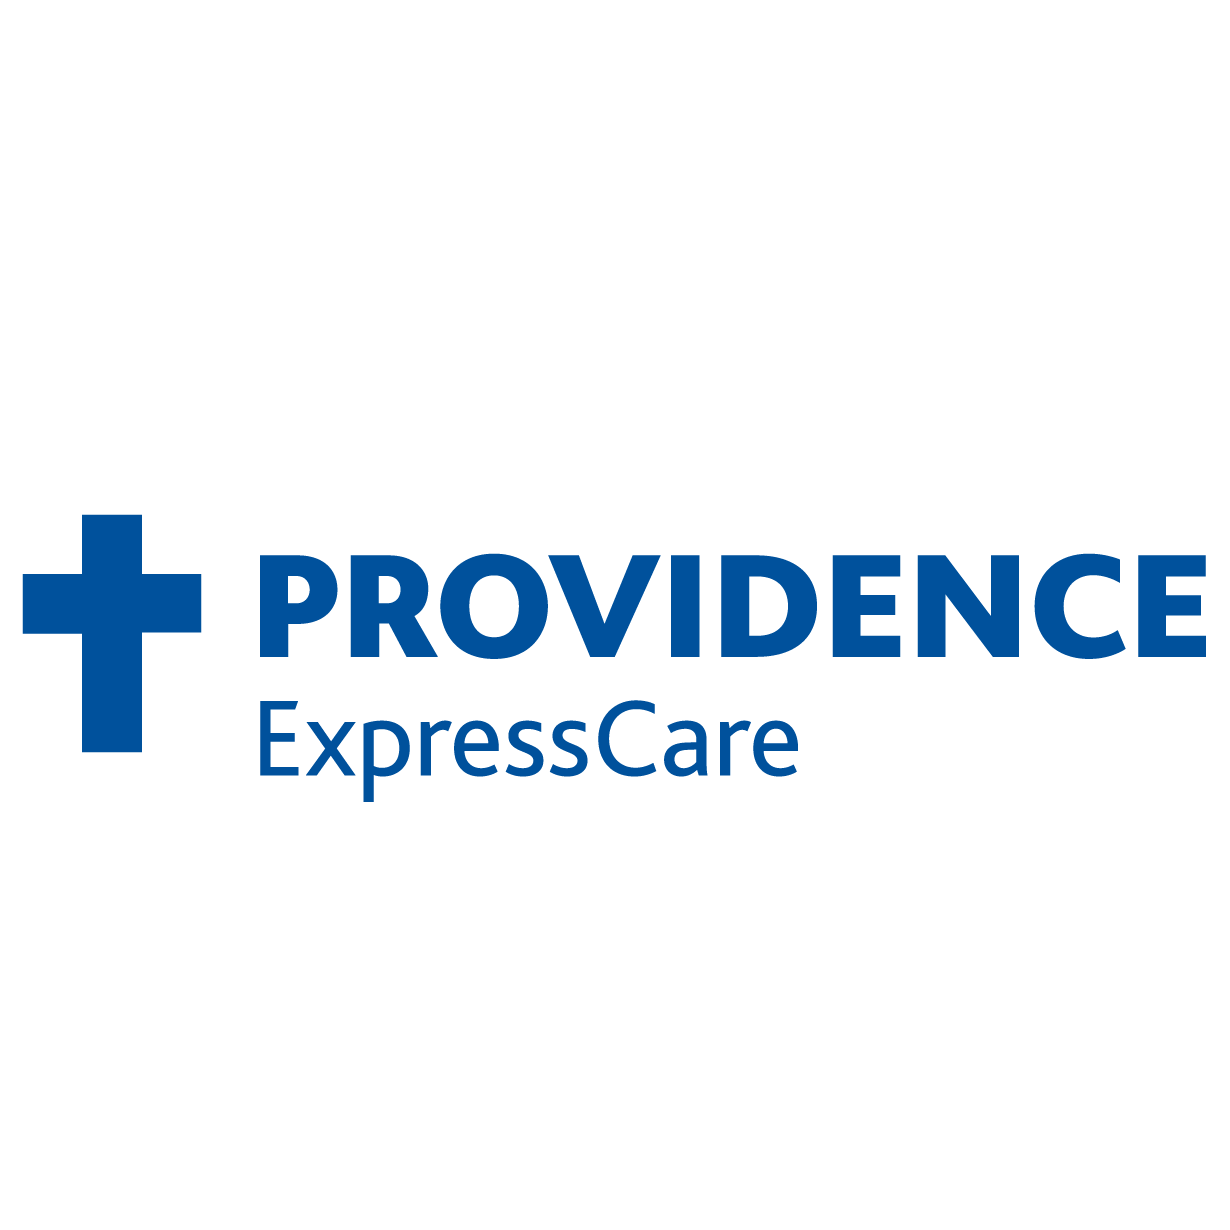 Providence Express Care at Walgreens - Tigard Logo